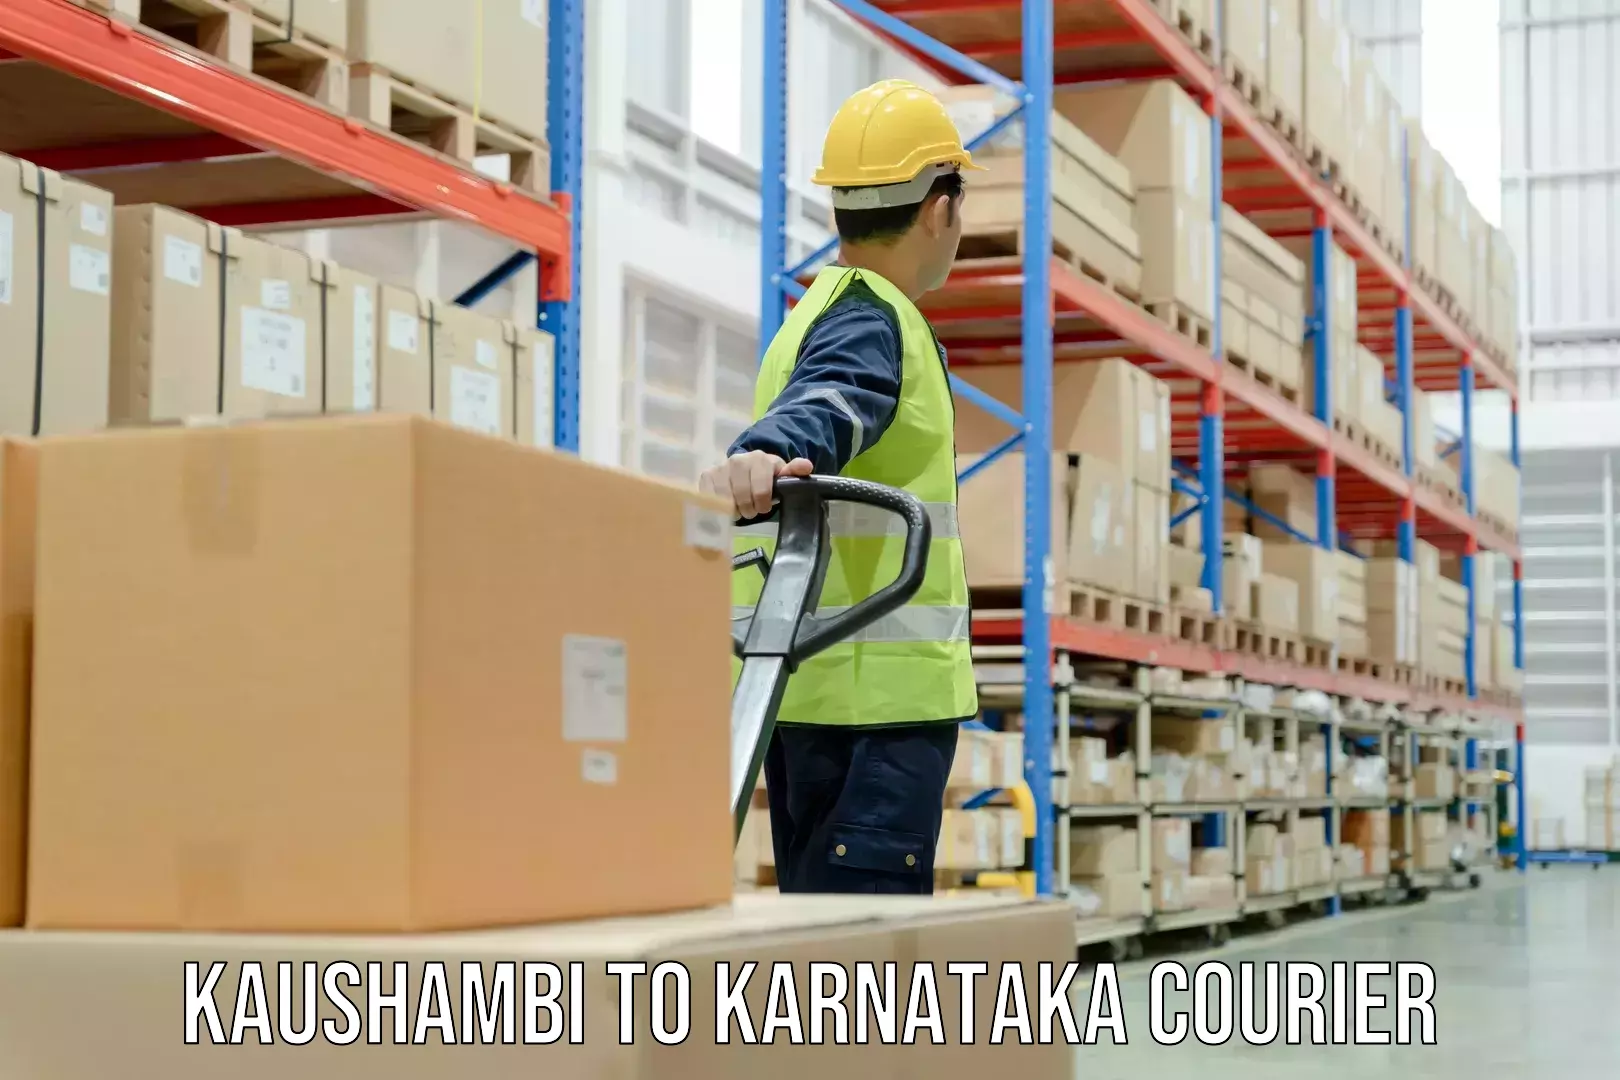 24-hour courier service Kaushambi to Yelburga